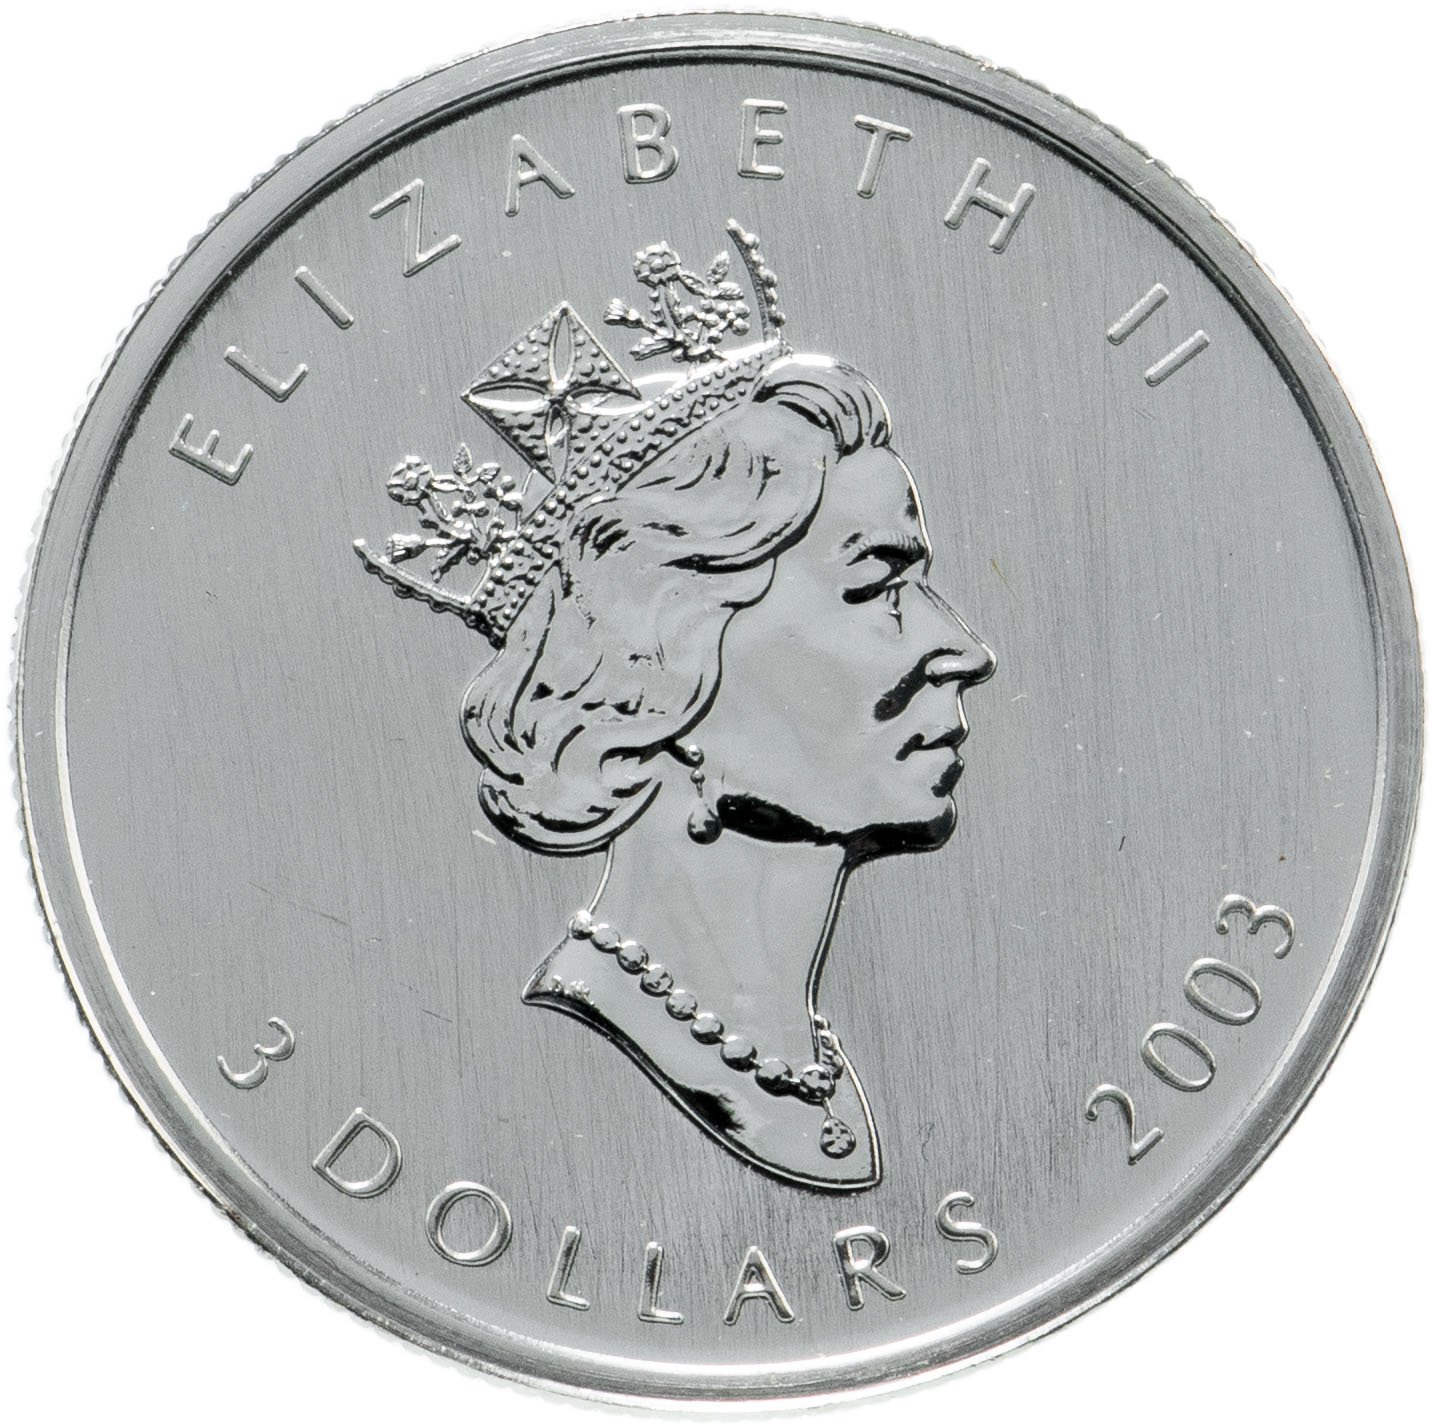 25 Долларов. Монета Канада 50 центов 2001 фольклор и легенды. Канада 2002. Канада 5 долларов 2018. 1 Унция серебра рутений позолота.